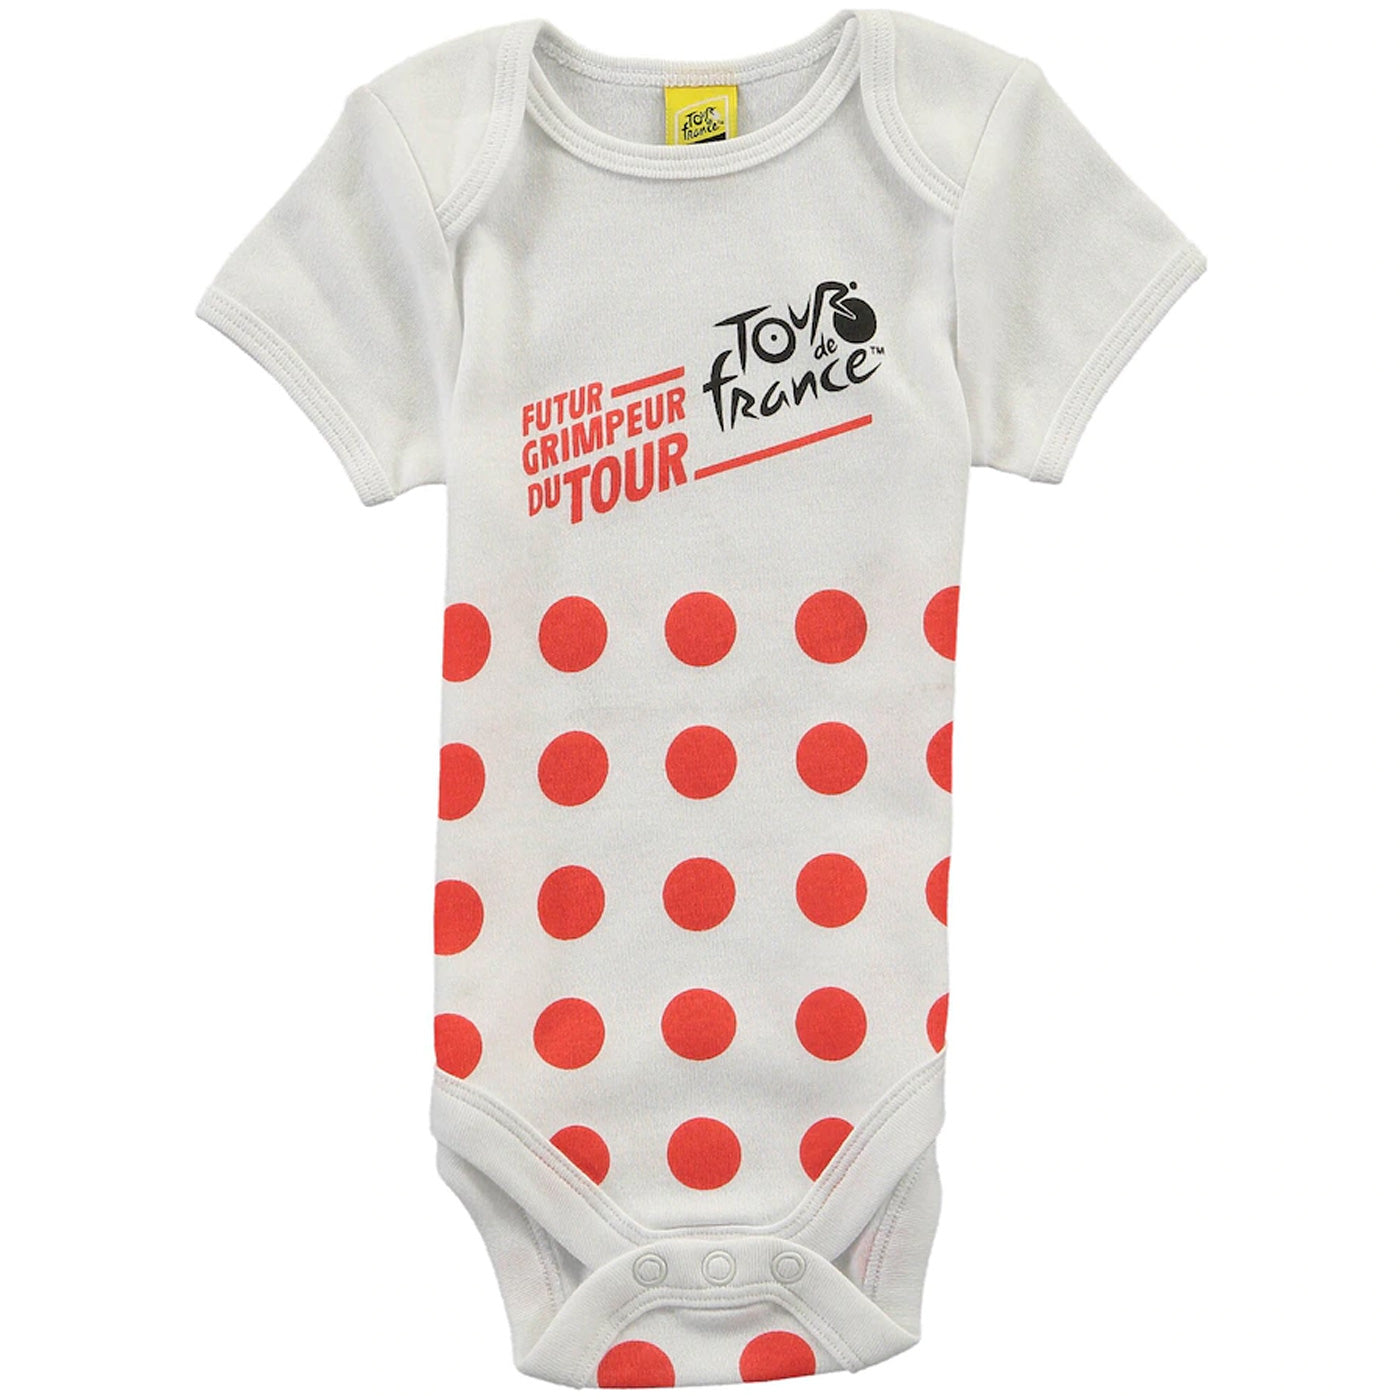 Tour de France 2022 kinder body - Polka Dot